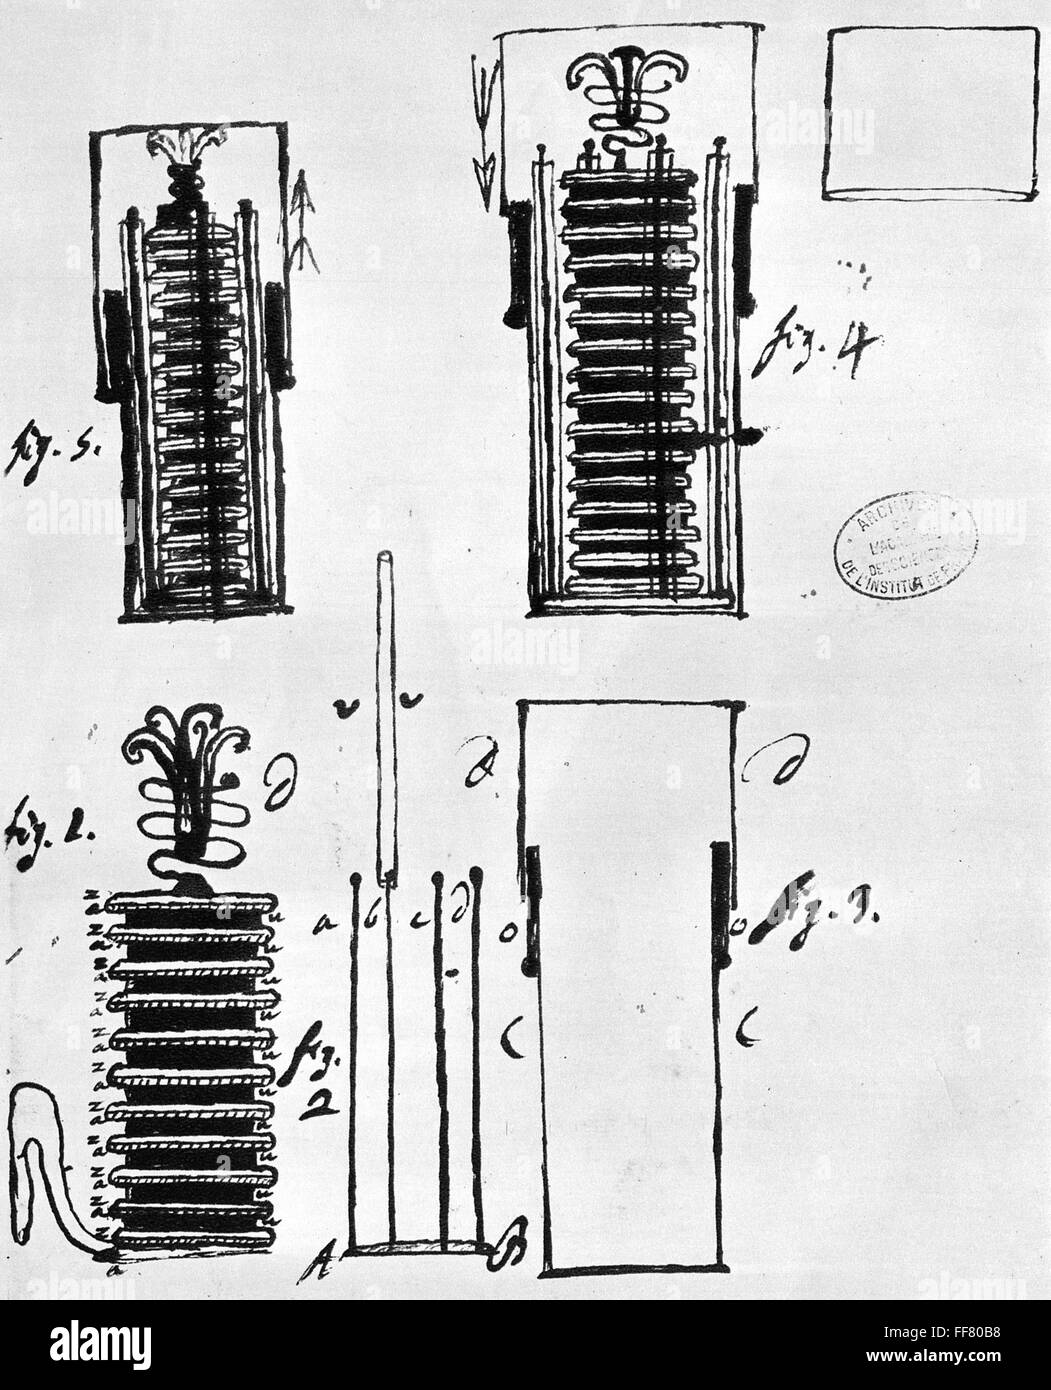 Pila VOLTAICA, 1801. /NManuscript dibujo de Alessandro Volta la pila  voltaica o pila eléctrica, desde 1801 una carta enviada por volta al  geólogo francés Deodat de Dolomieu Fotografía de stock - Alamy